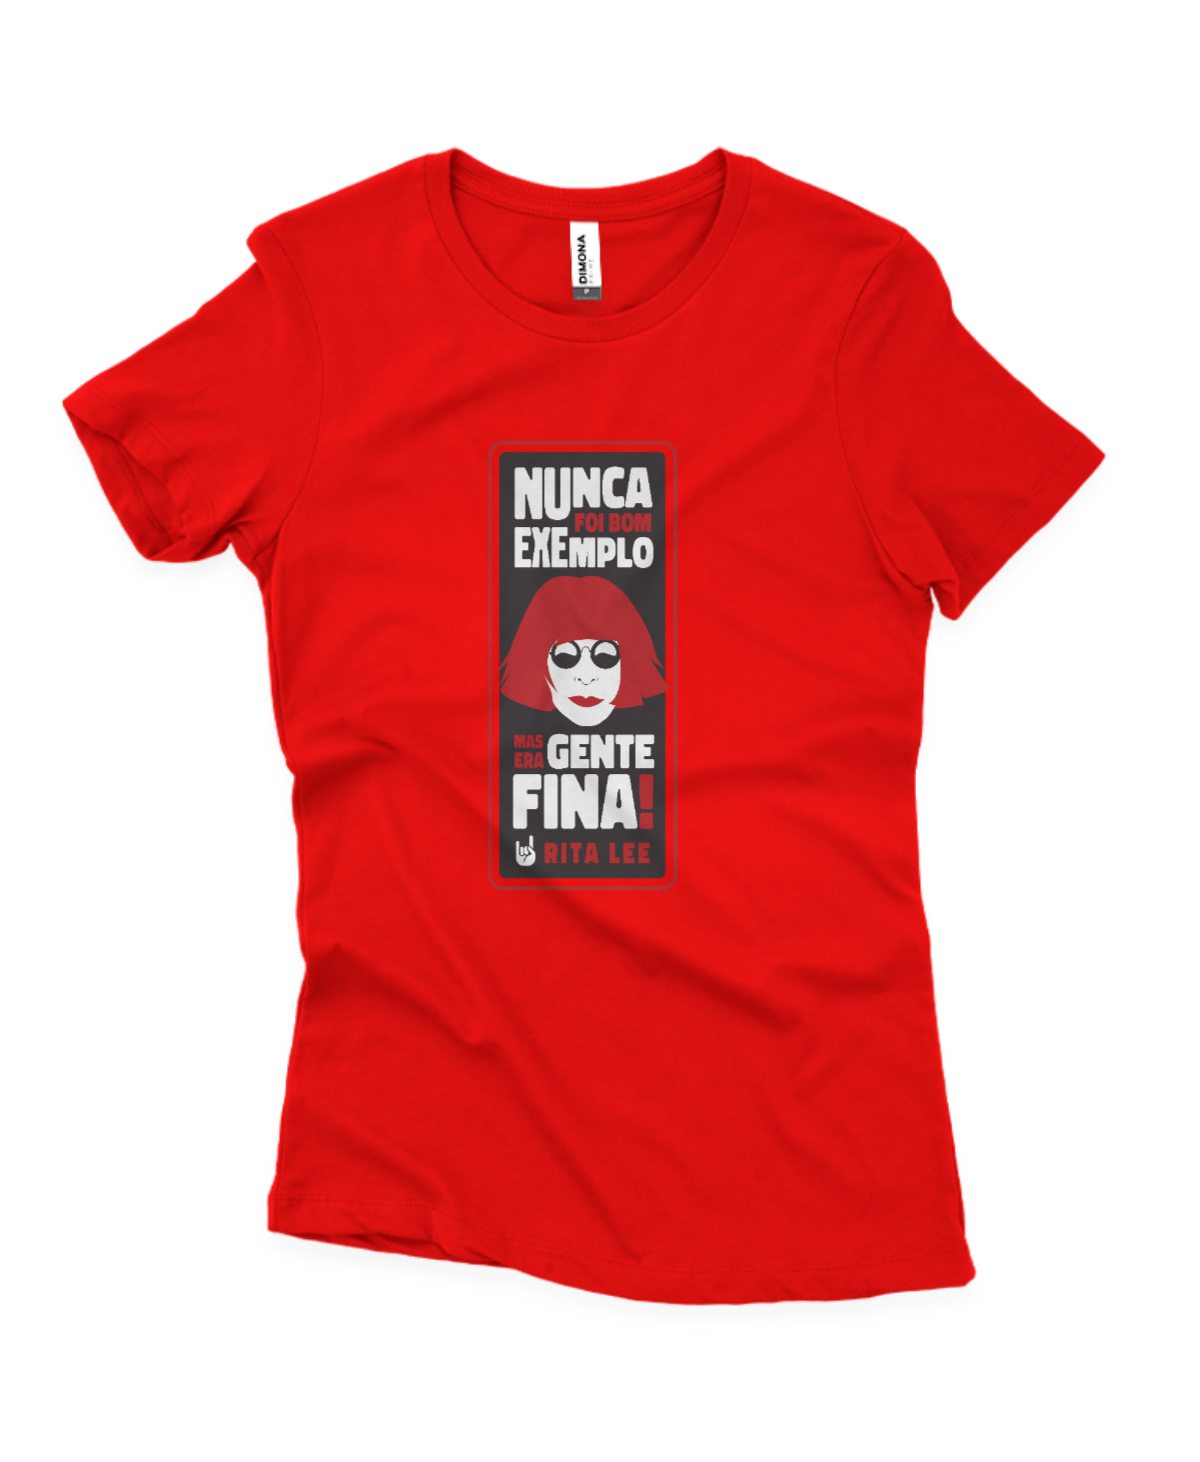 camiseta feminina cor vermelha com estampa da Rita Lee e frase "nunca foi bom exemplo mas era gente fina"